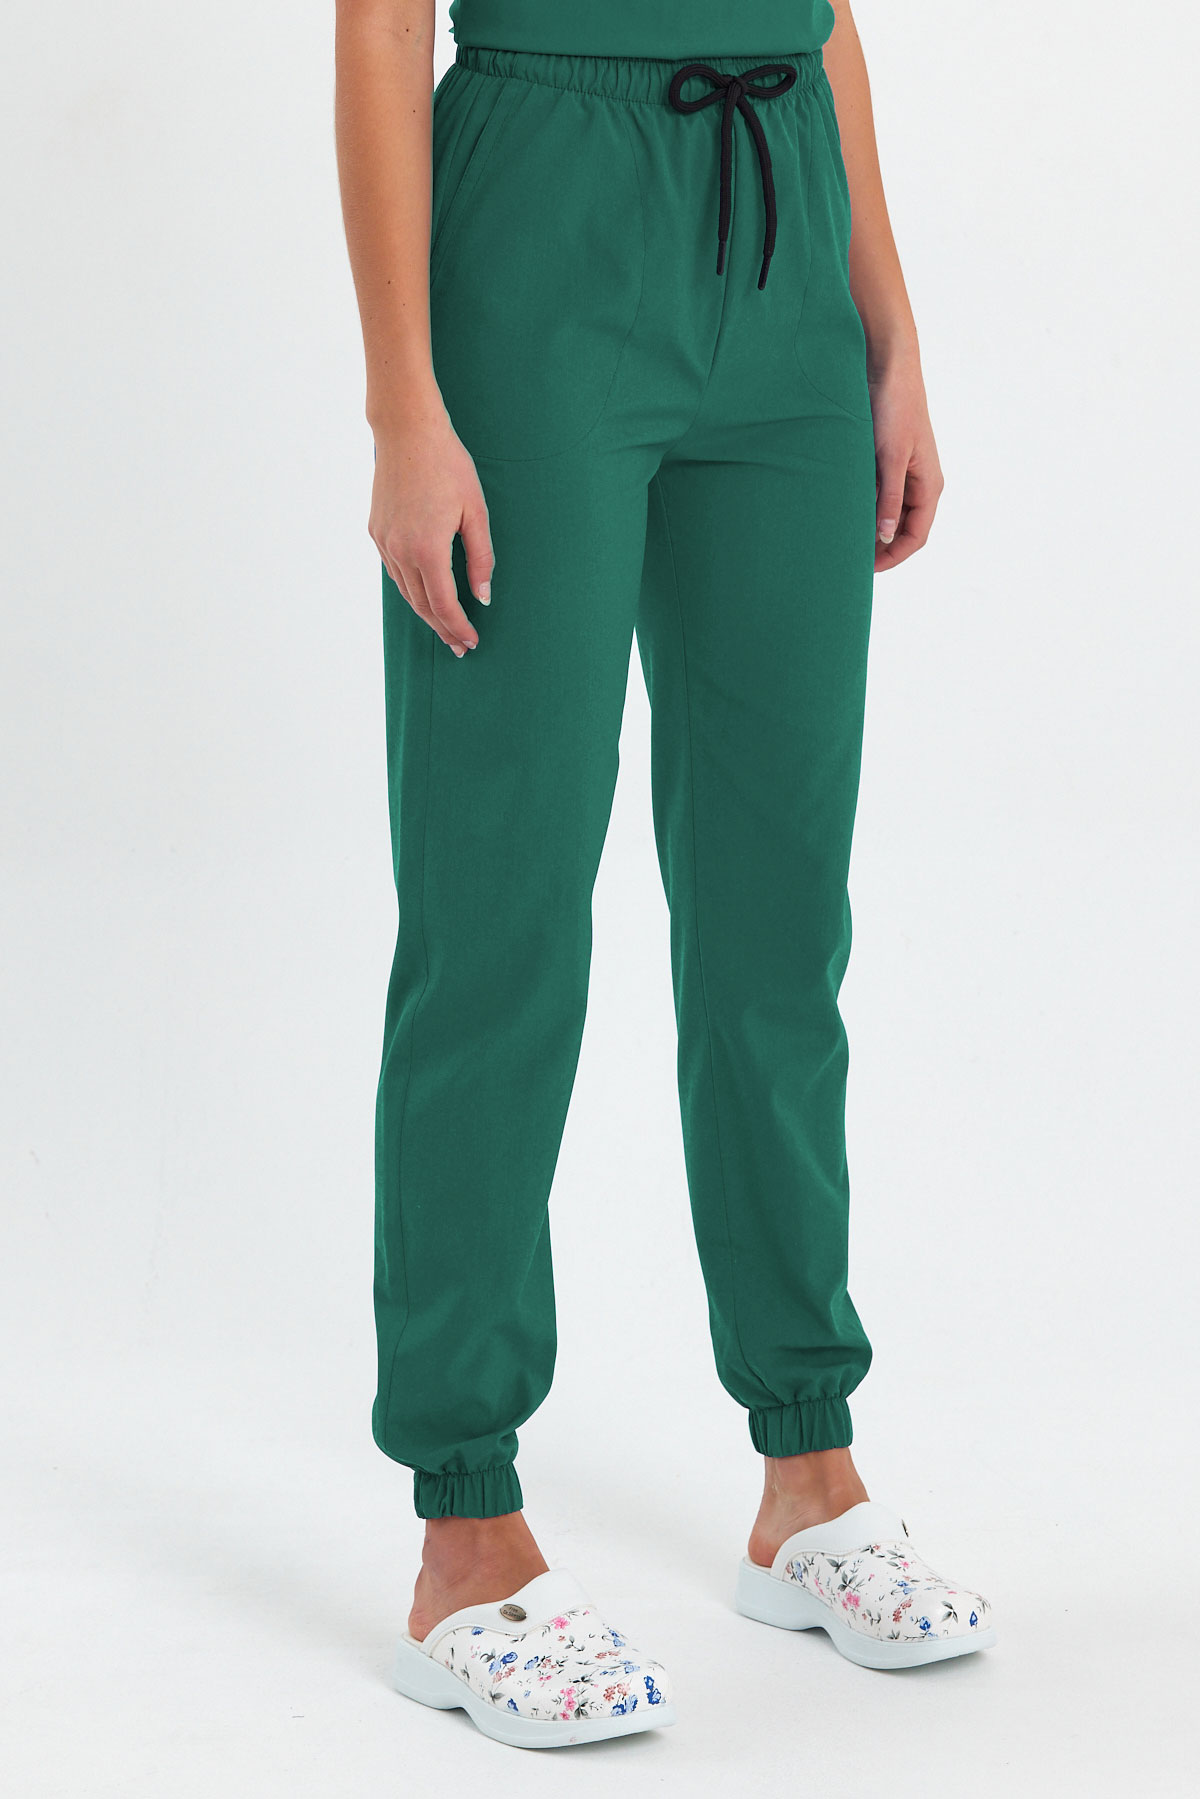 1010 Basic Cerrahi Yeşil Pantolon